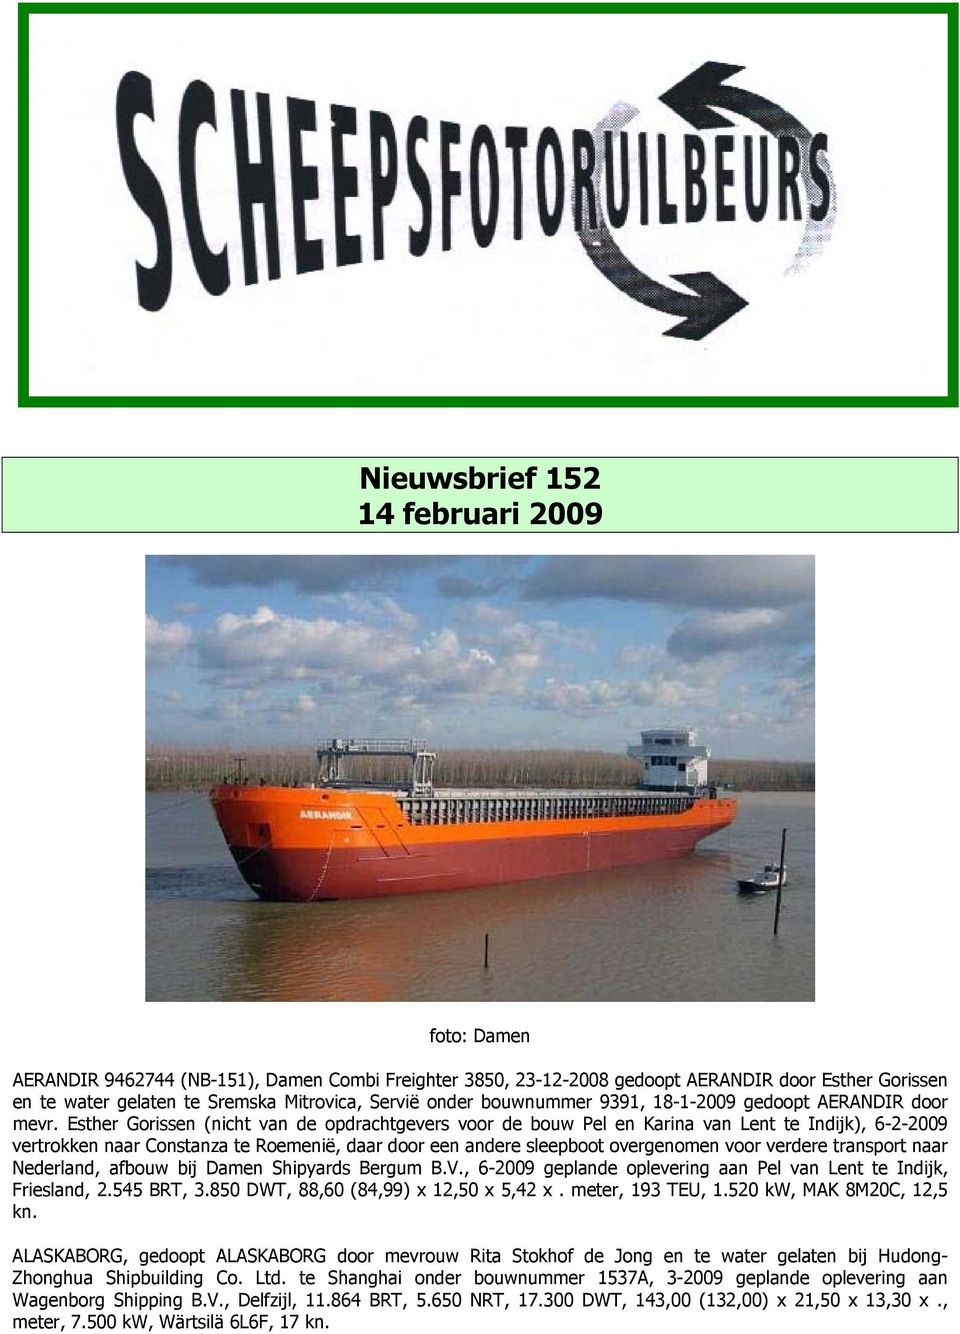 Esther Gorissen (nicht van de opdrachtgevers voor de bouw Pel en Karina van Lent te Indijk), 6-2-2009 vertrokken naar Constanza te Roemenië, daar door een andere sleepboot overgenomen voor verdere